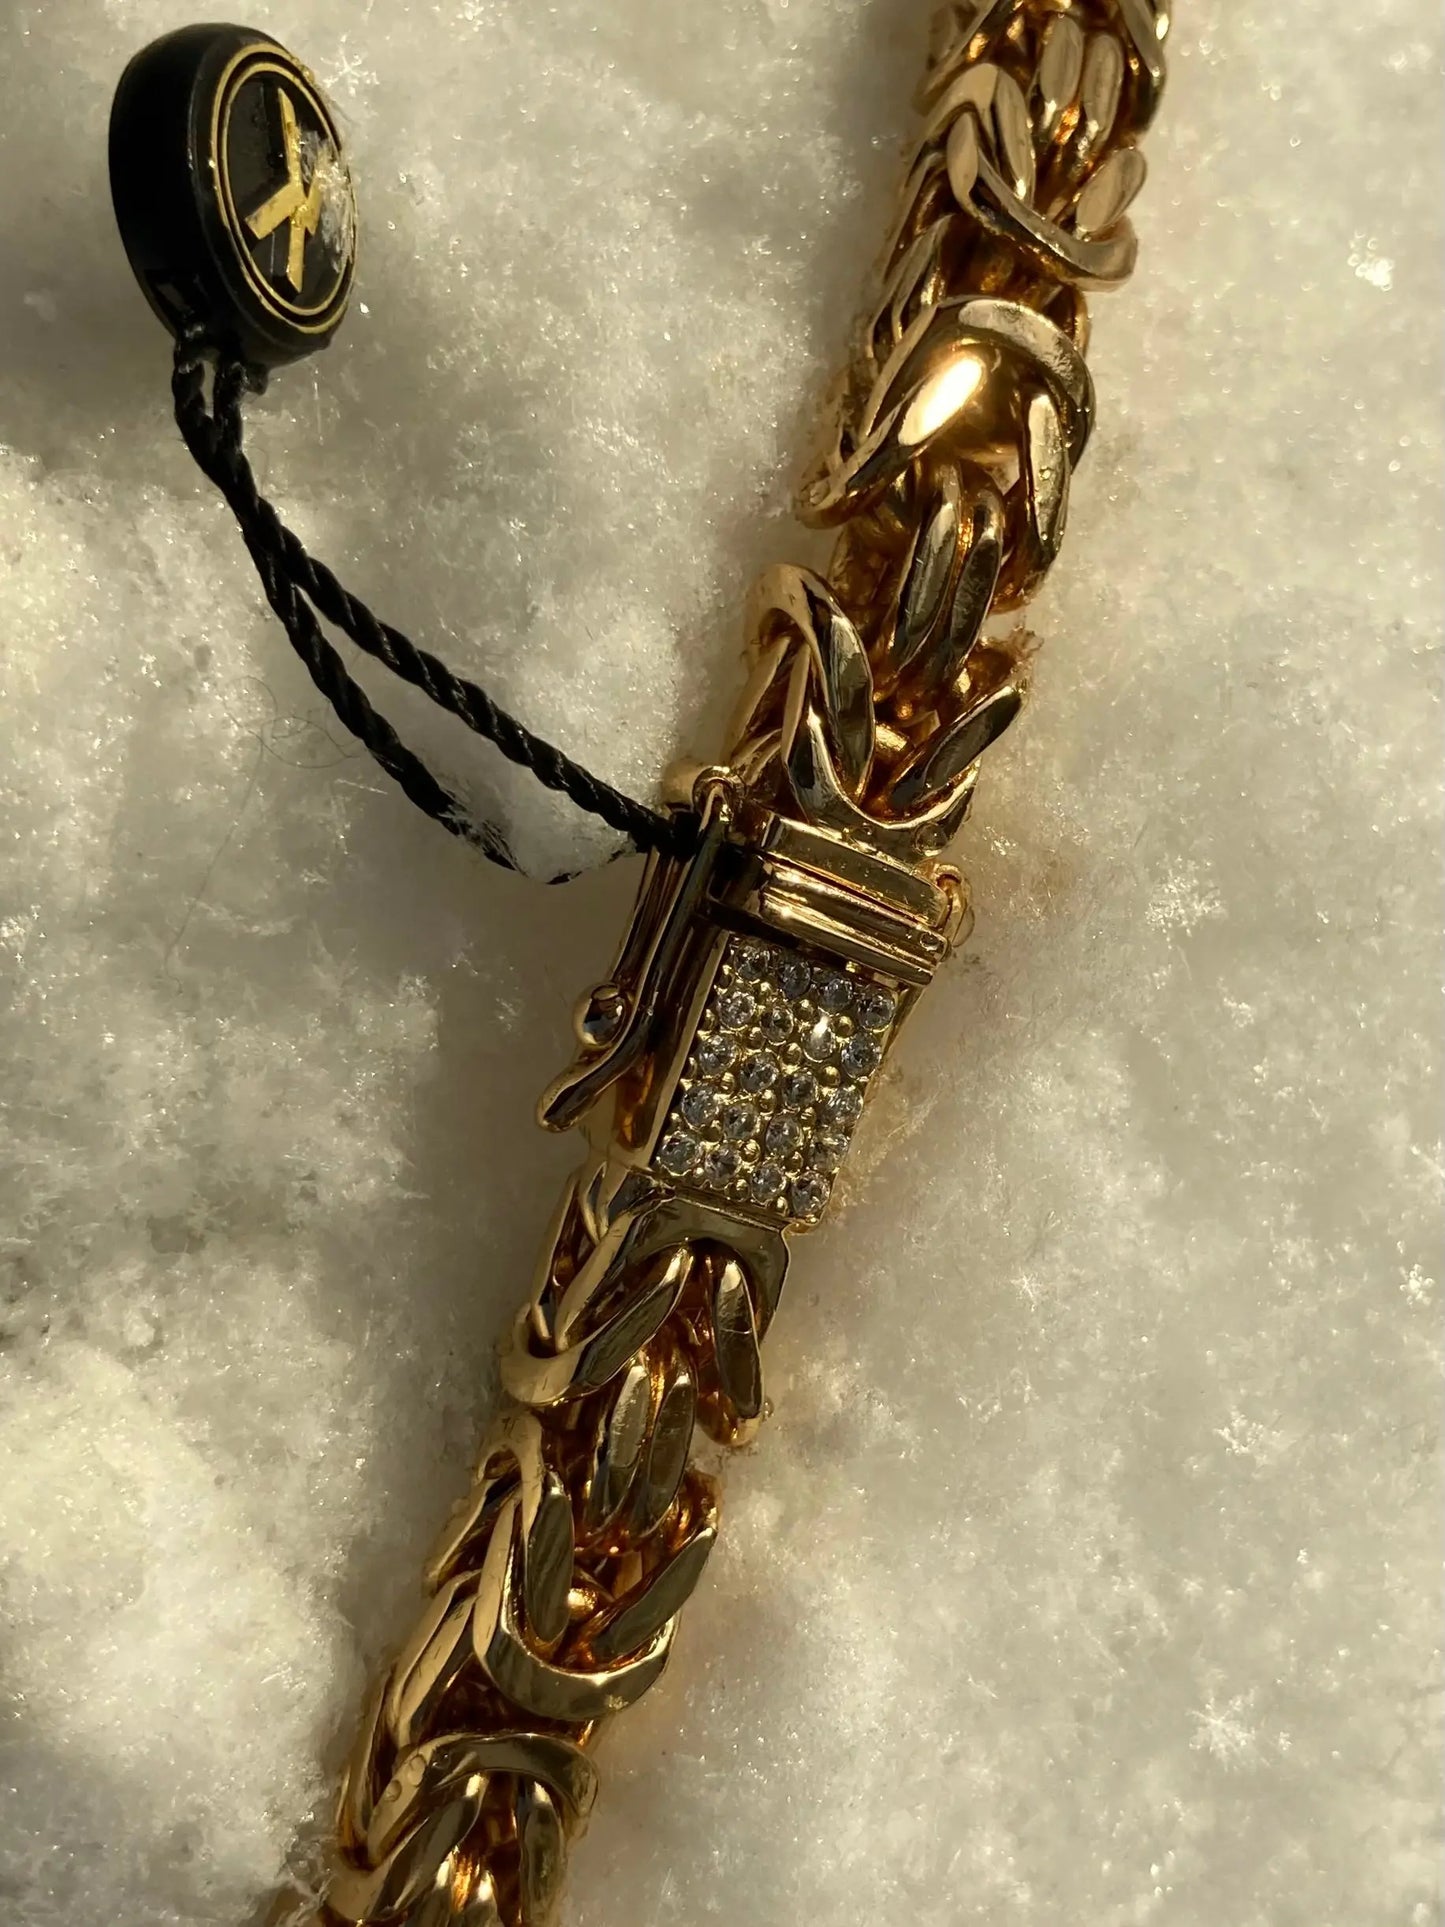 Kejsarlänk Halsband 6mm - 18K Guldpläterad Kejsar